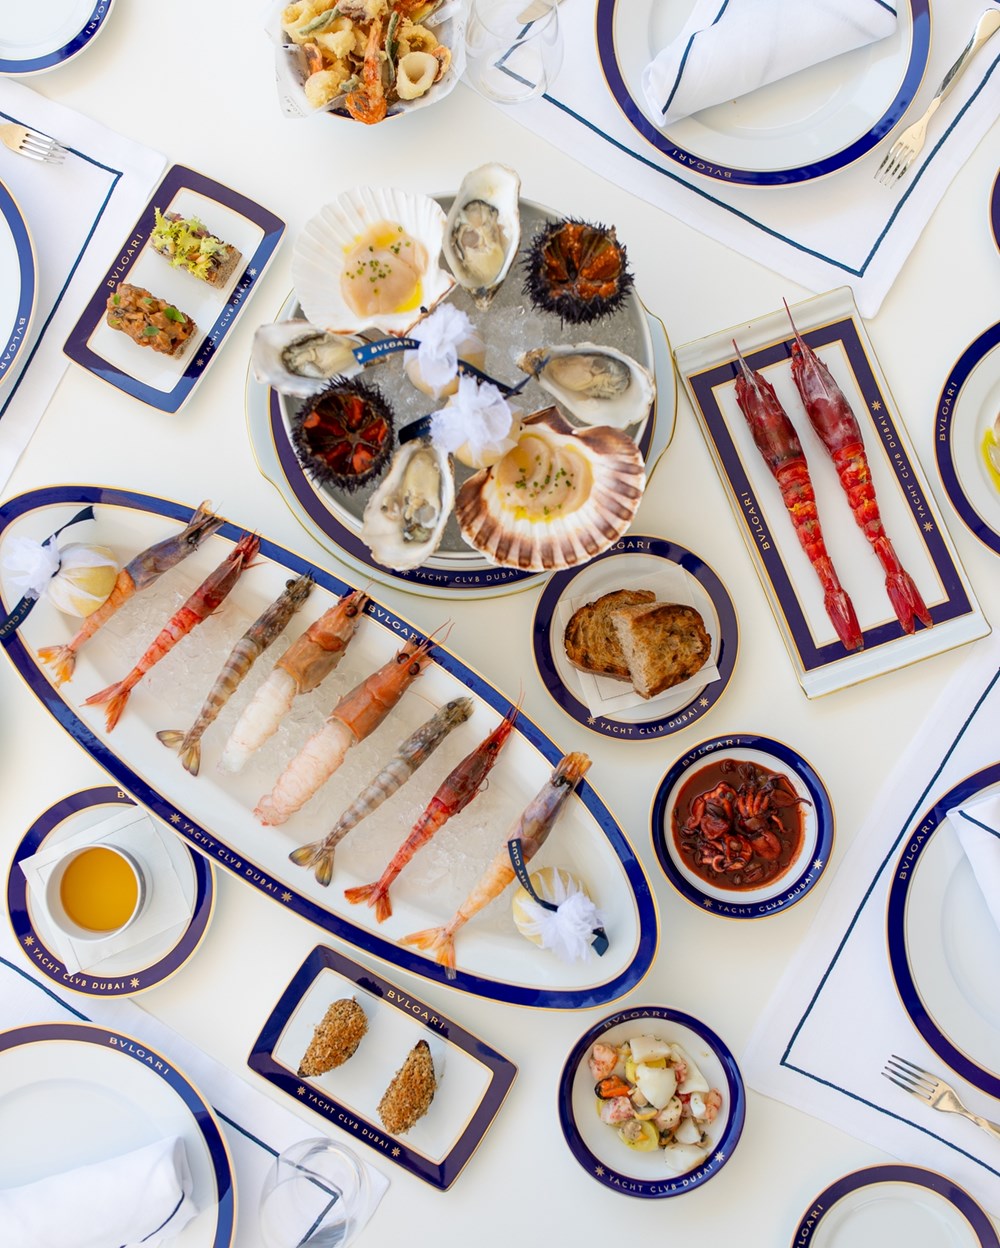 منتجع بولغري دبي يُعيد تعريف تجارب الطعام في مطعم نادي اليخوت بمفهومٍ جديدٍ